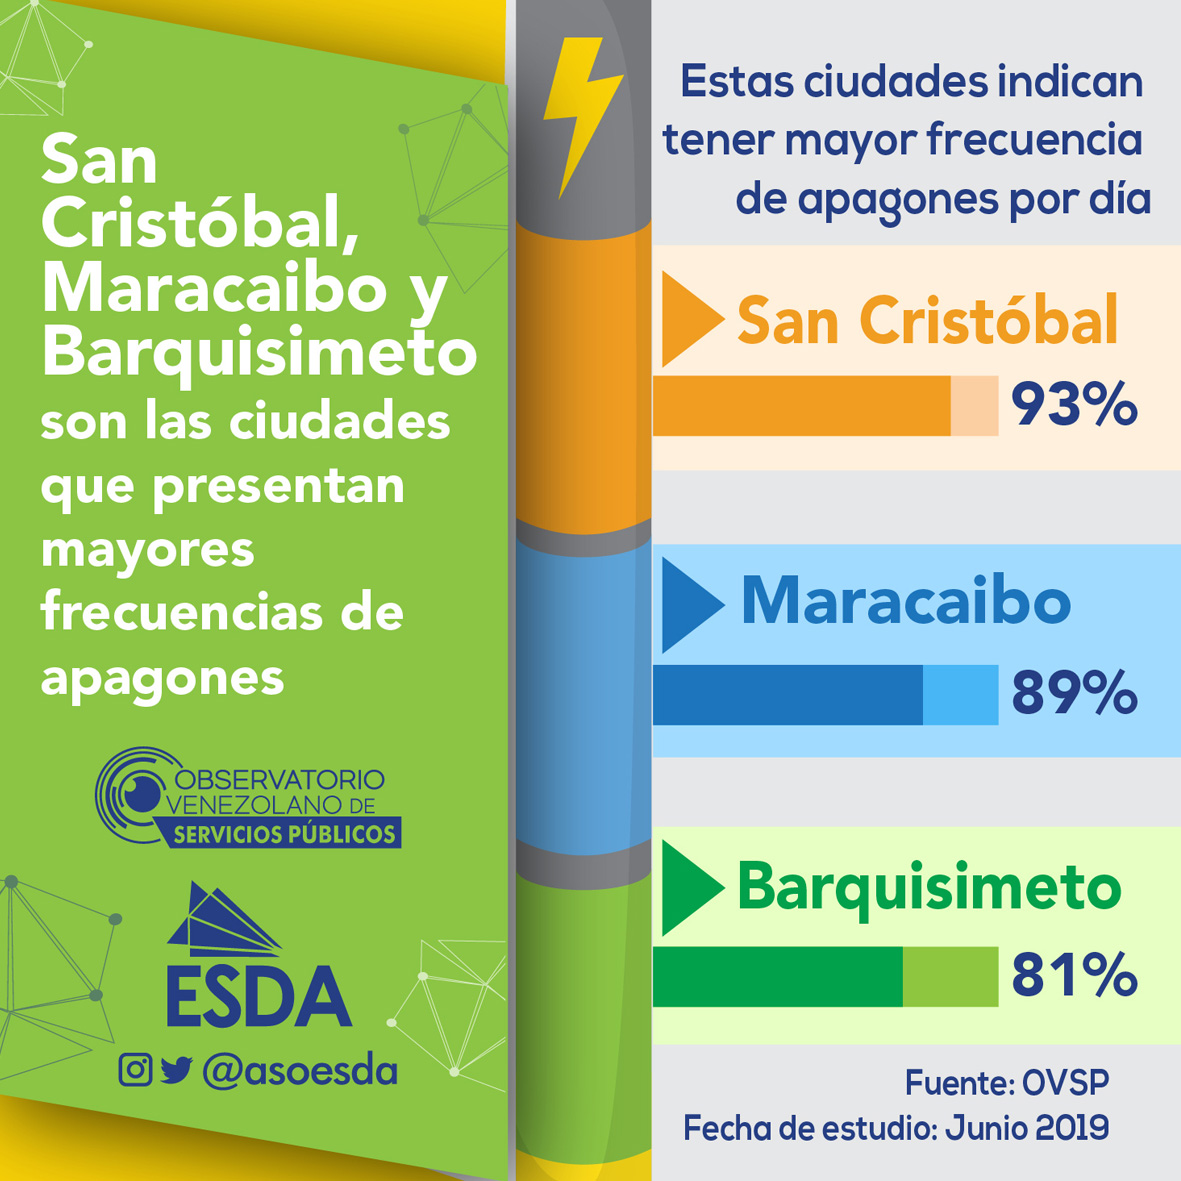 San Cristóbal, Maracaibo y Barquisimeto son las ciudades que presentan mayores frecuencias de apagones